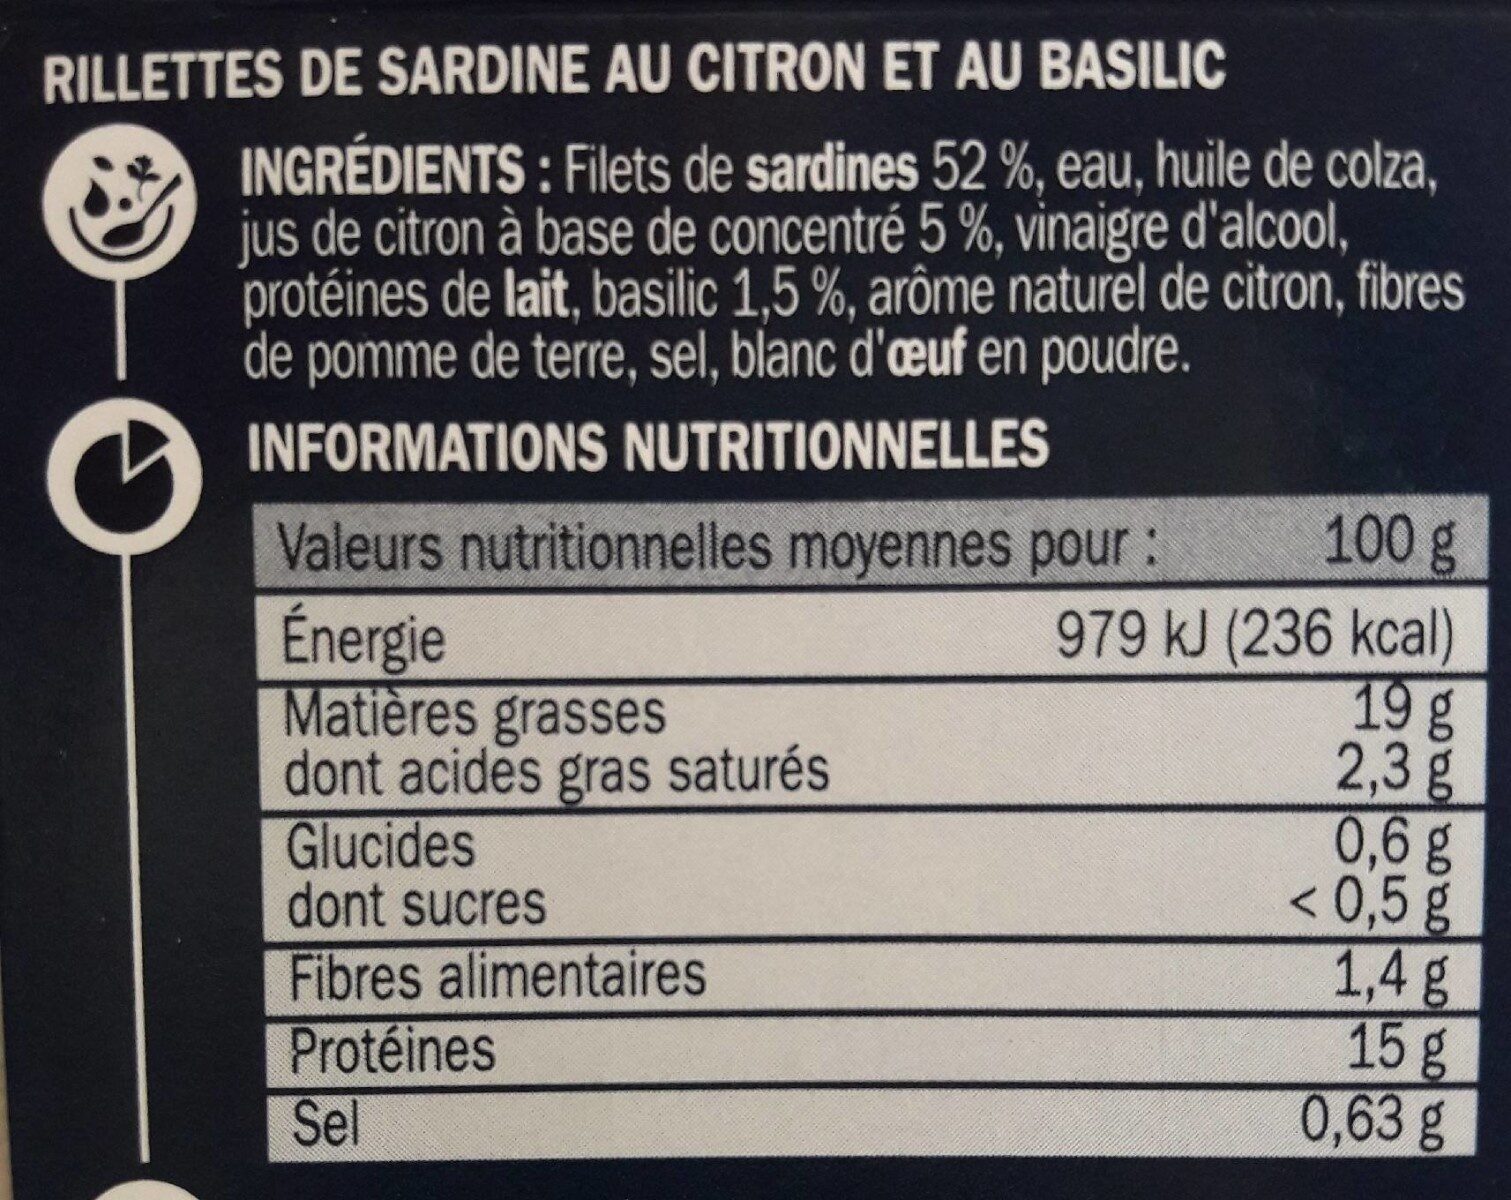 Rillettes de sardine citron basilic - Nutrition facts - fr